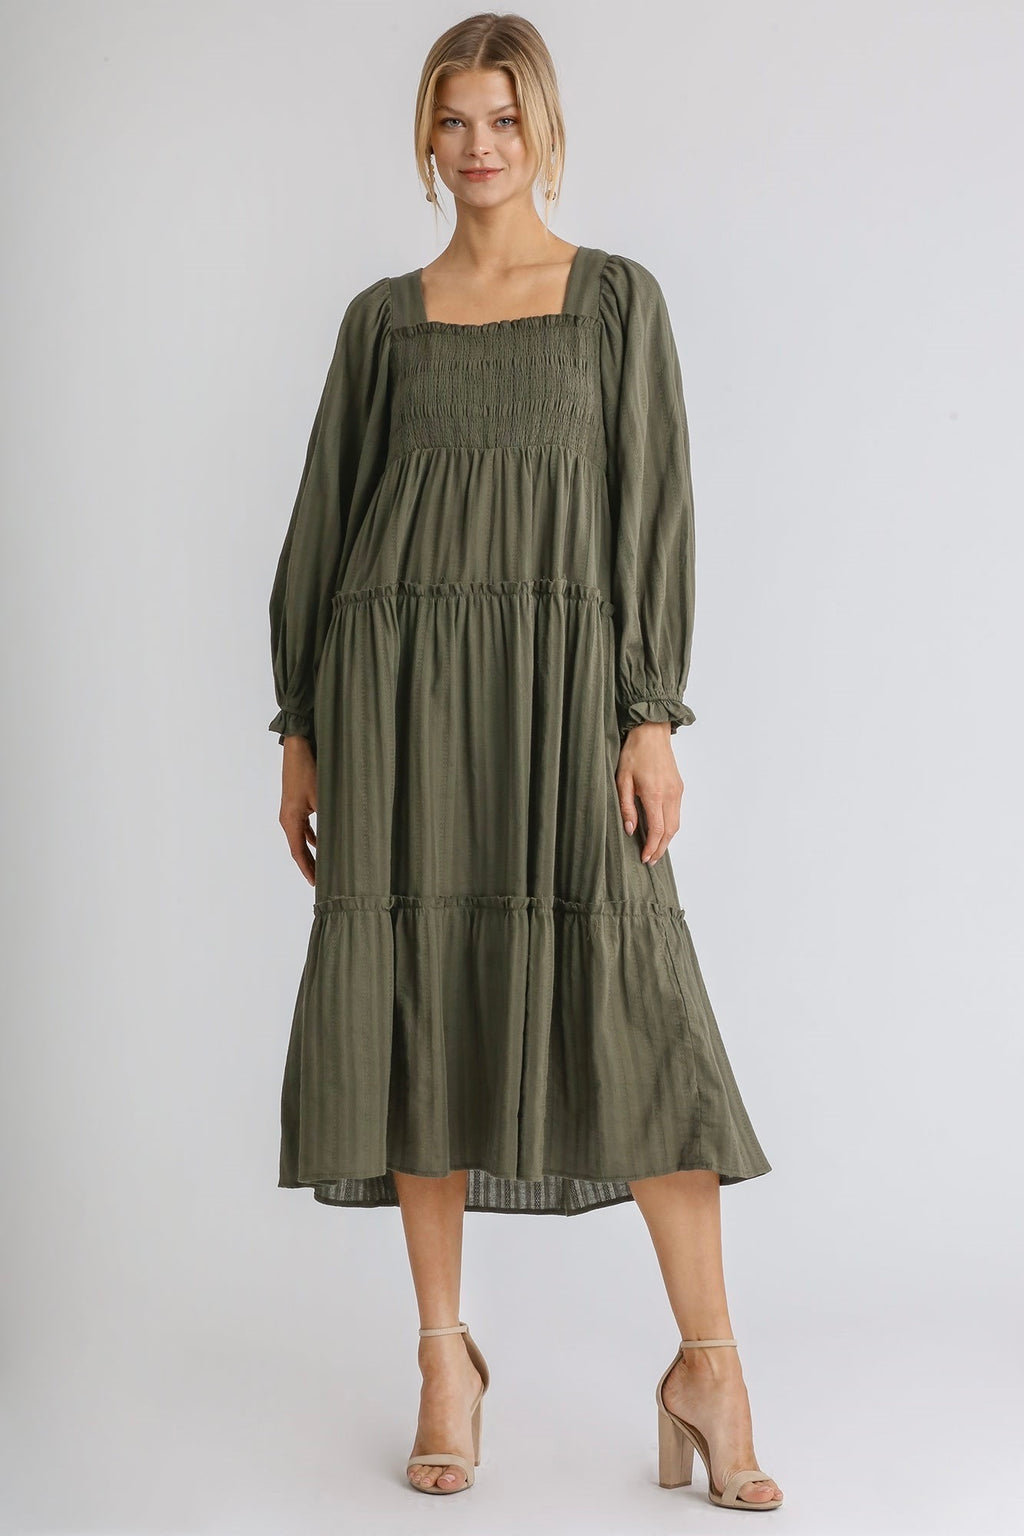 Umgee - Long Sleeve Smocked Midi Dress, Olive - Monogram Market